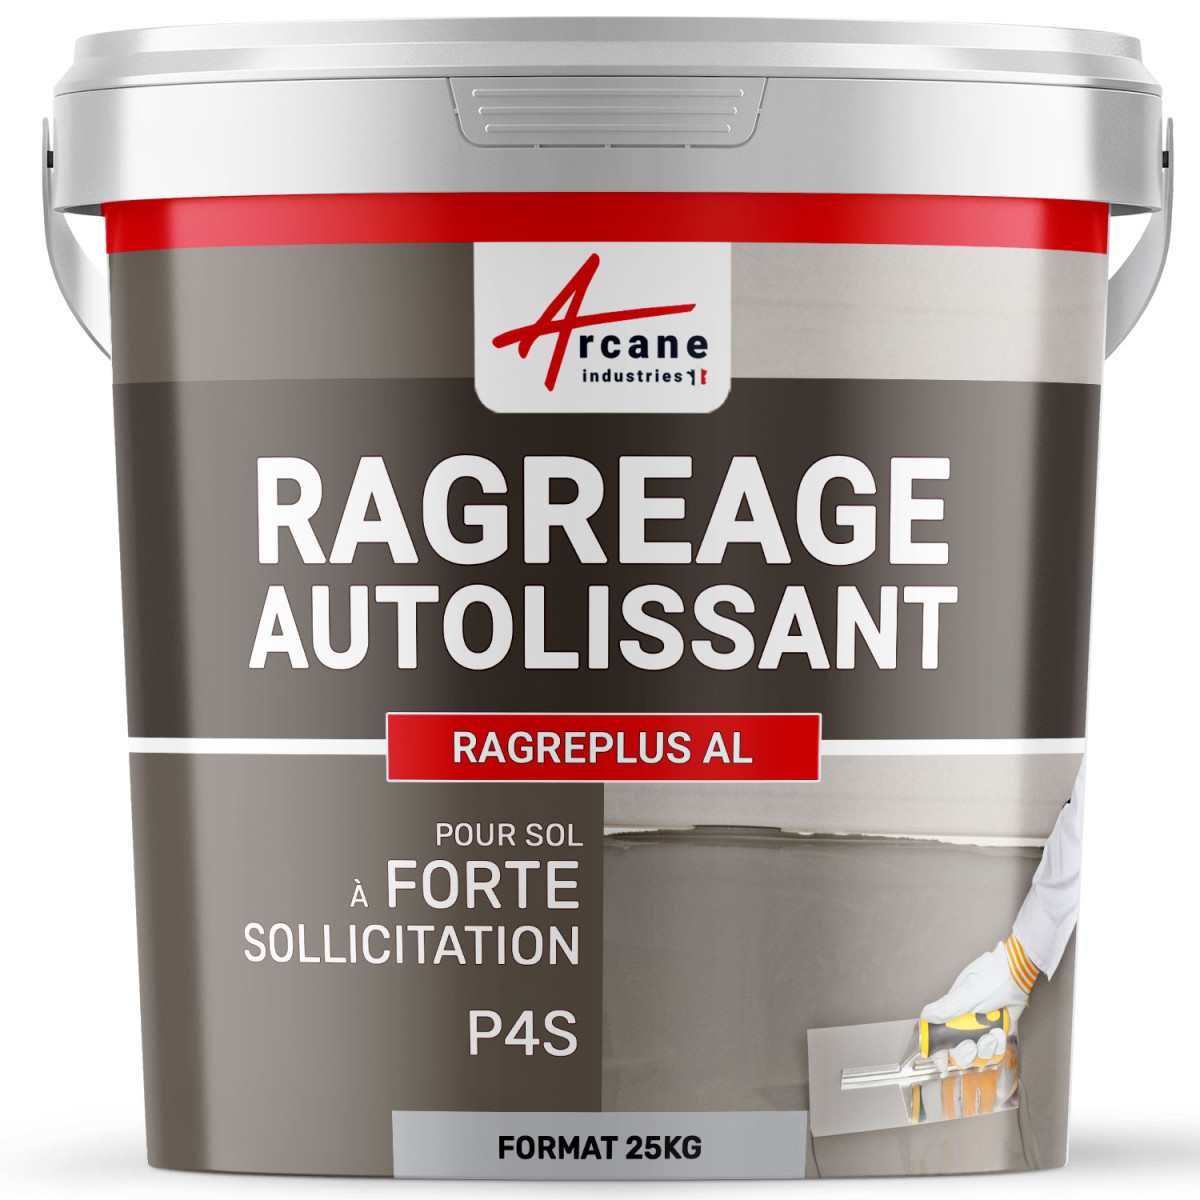 Ragréage autolissant P4 P4S sol masquage joints carrelage nivelage avant beton cire peinture revetement RAGREPLUS AL